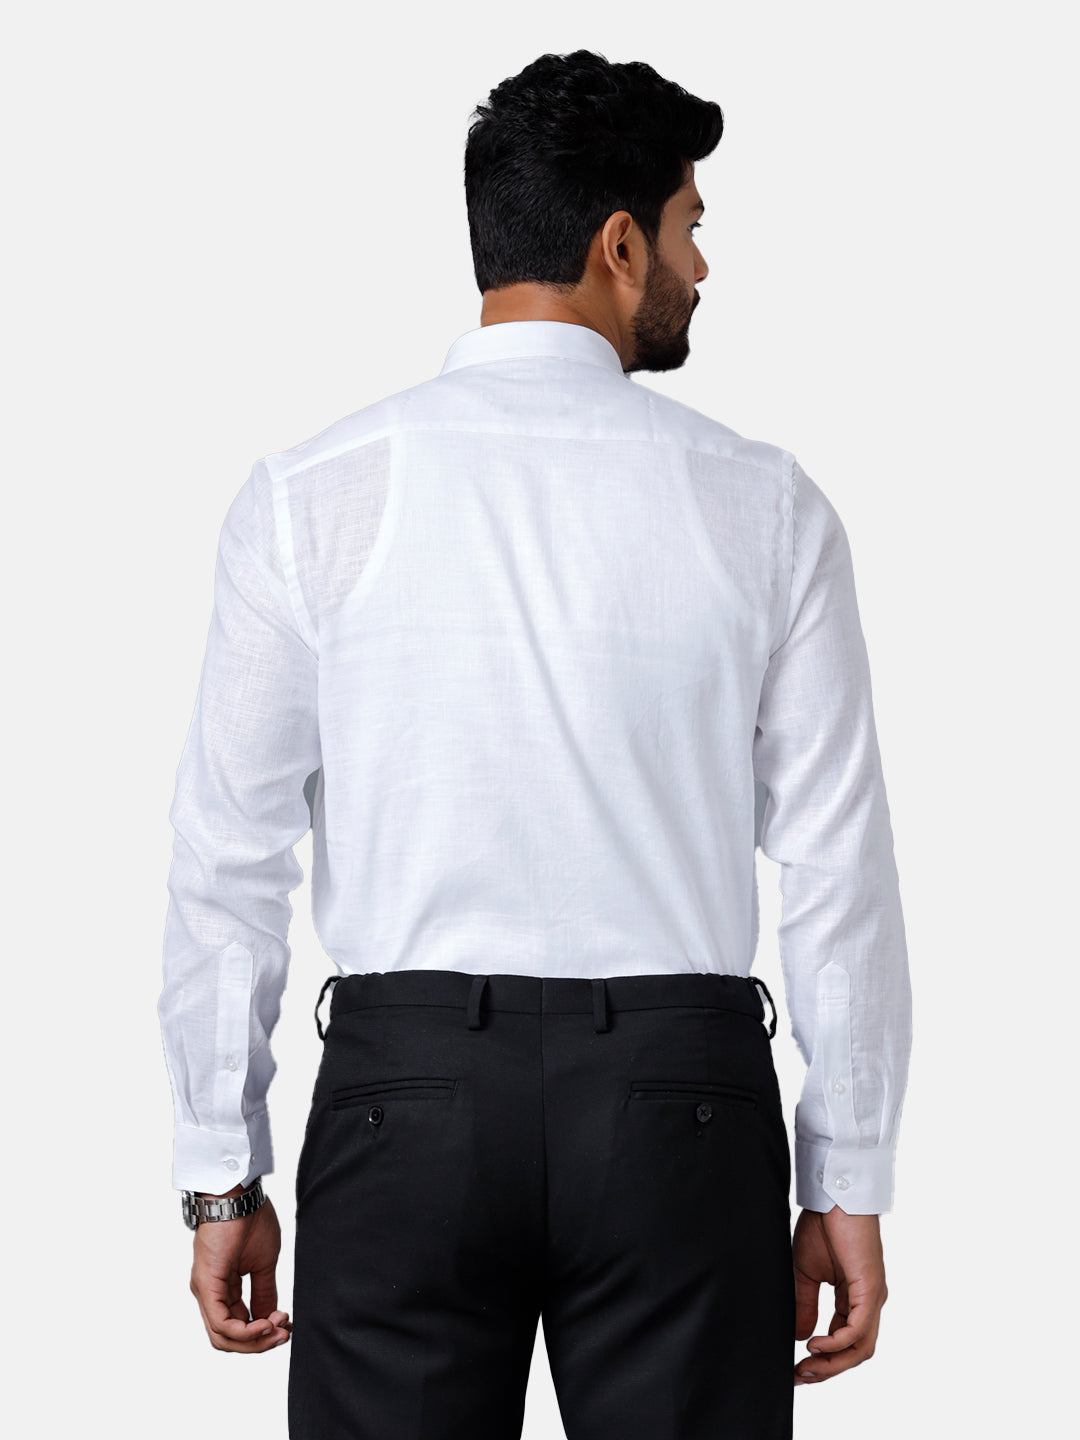 Mens Pure Linen White Shirt Full Sleeves 5100